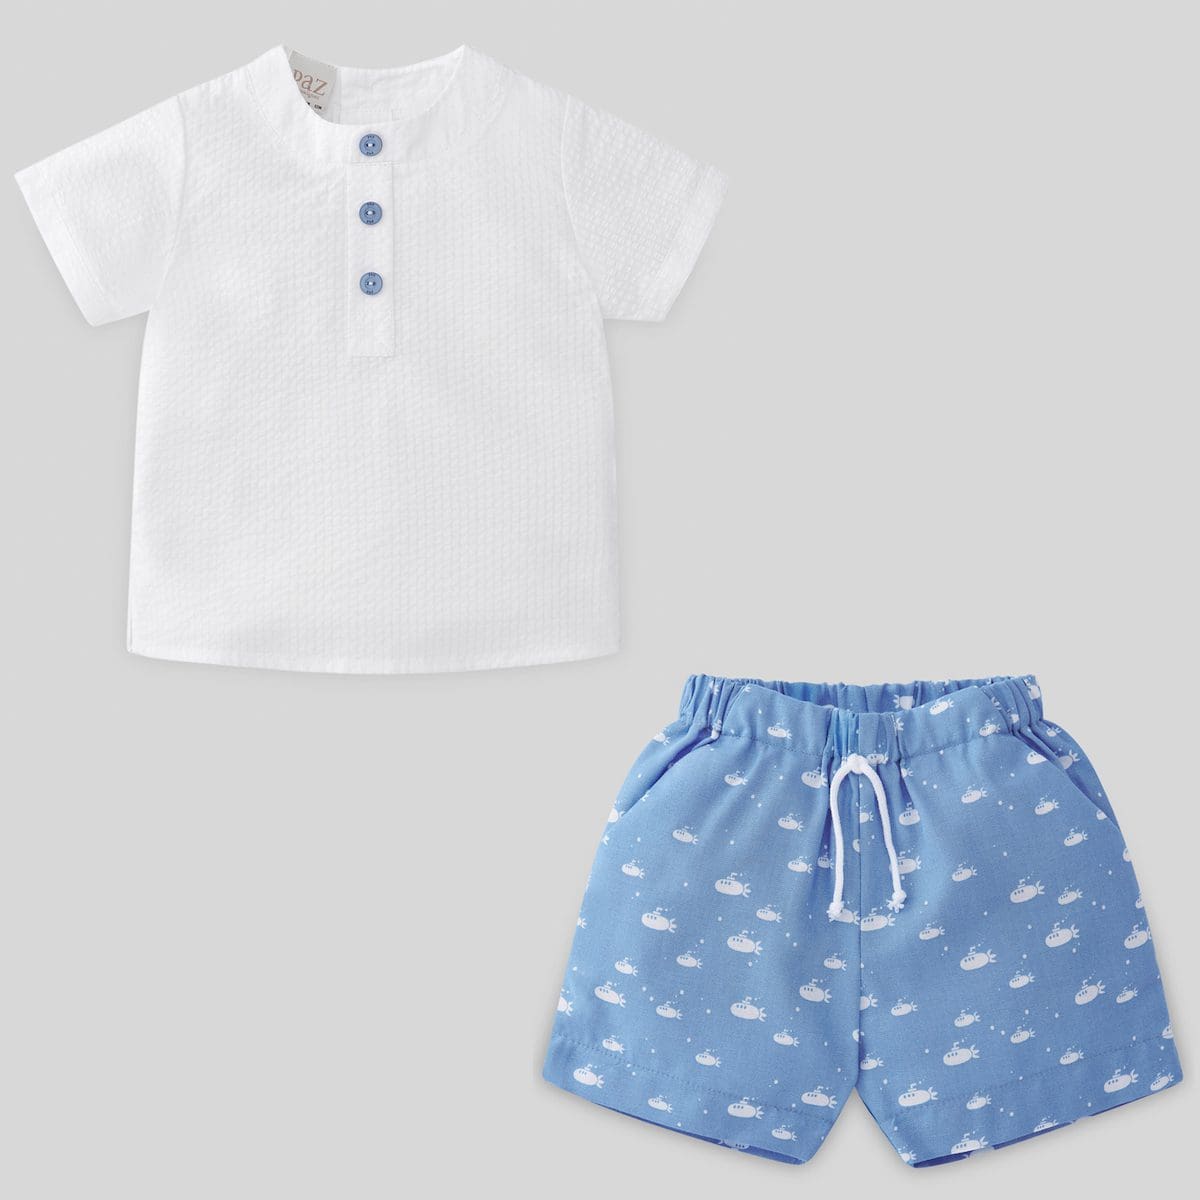 Woven Submarino Shorts & Shirt Set – Ivy Babies